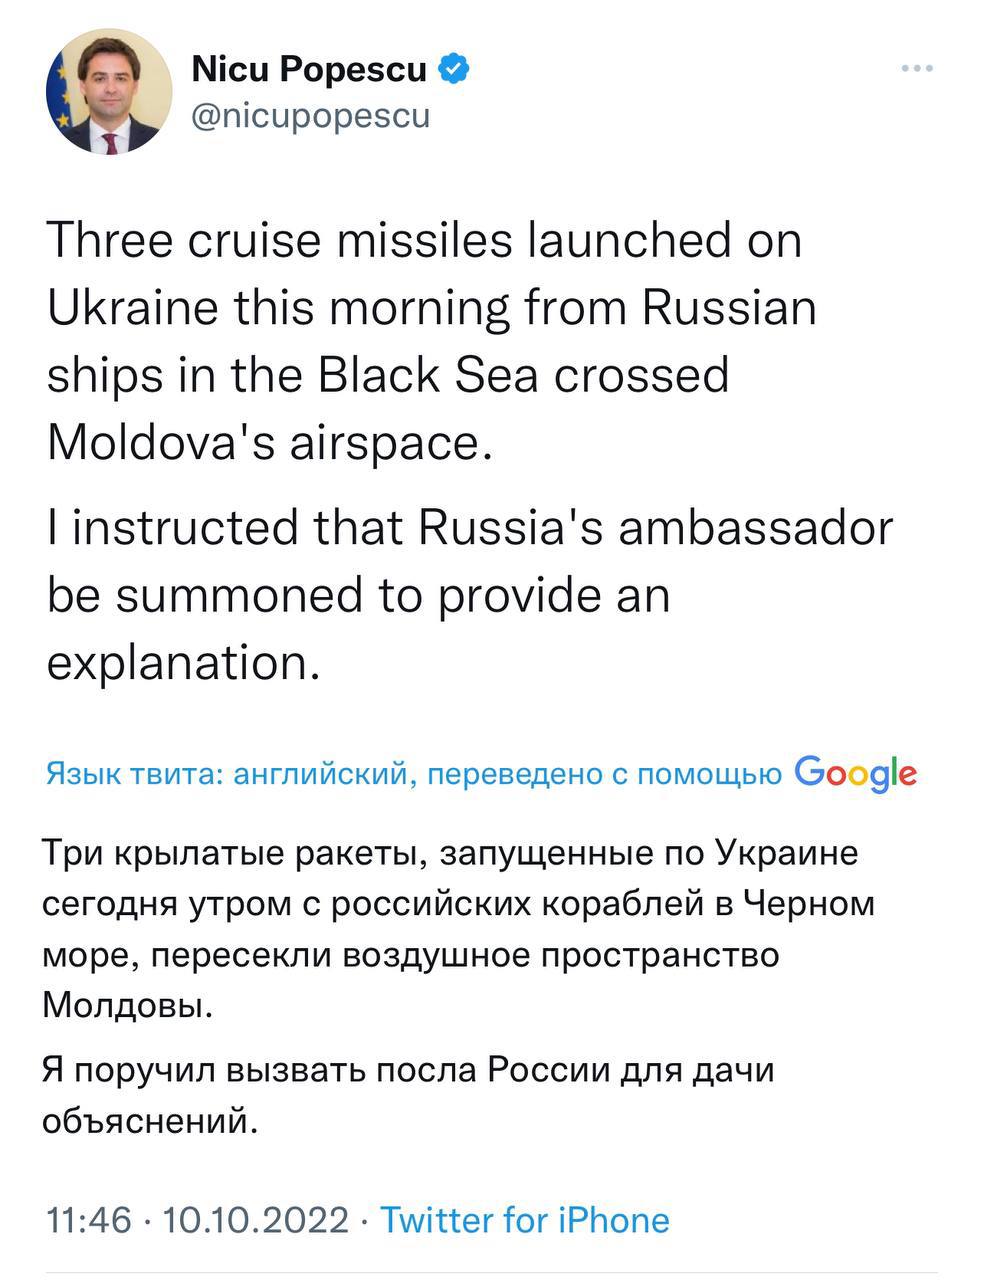 🇲🇩Посол РФ в Молдавии Олег Васнецов был вызван в МИД республики после заявления о нарушении тремя крылатыми ракетами воздушного пространства страны